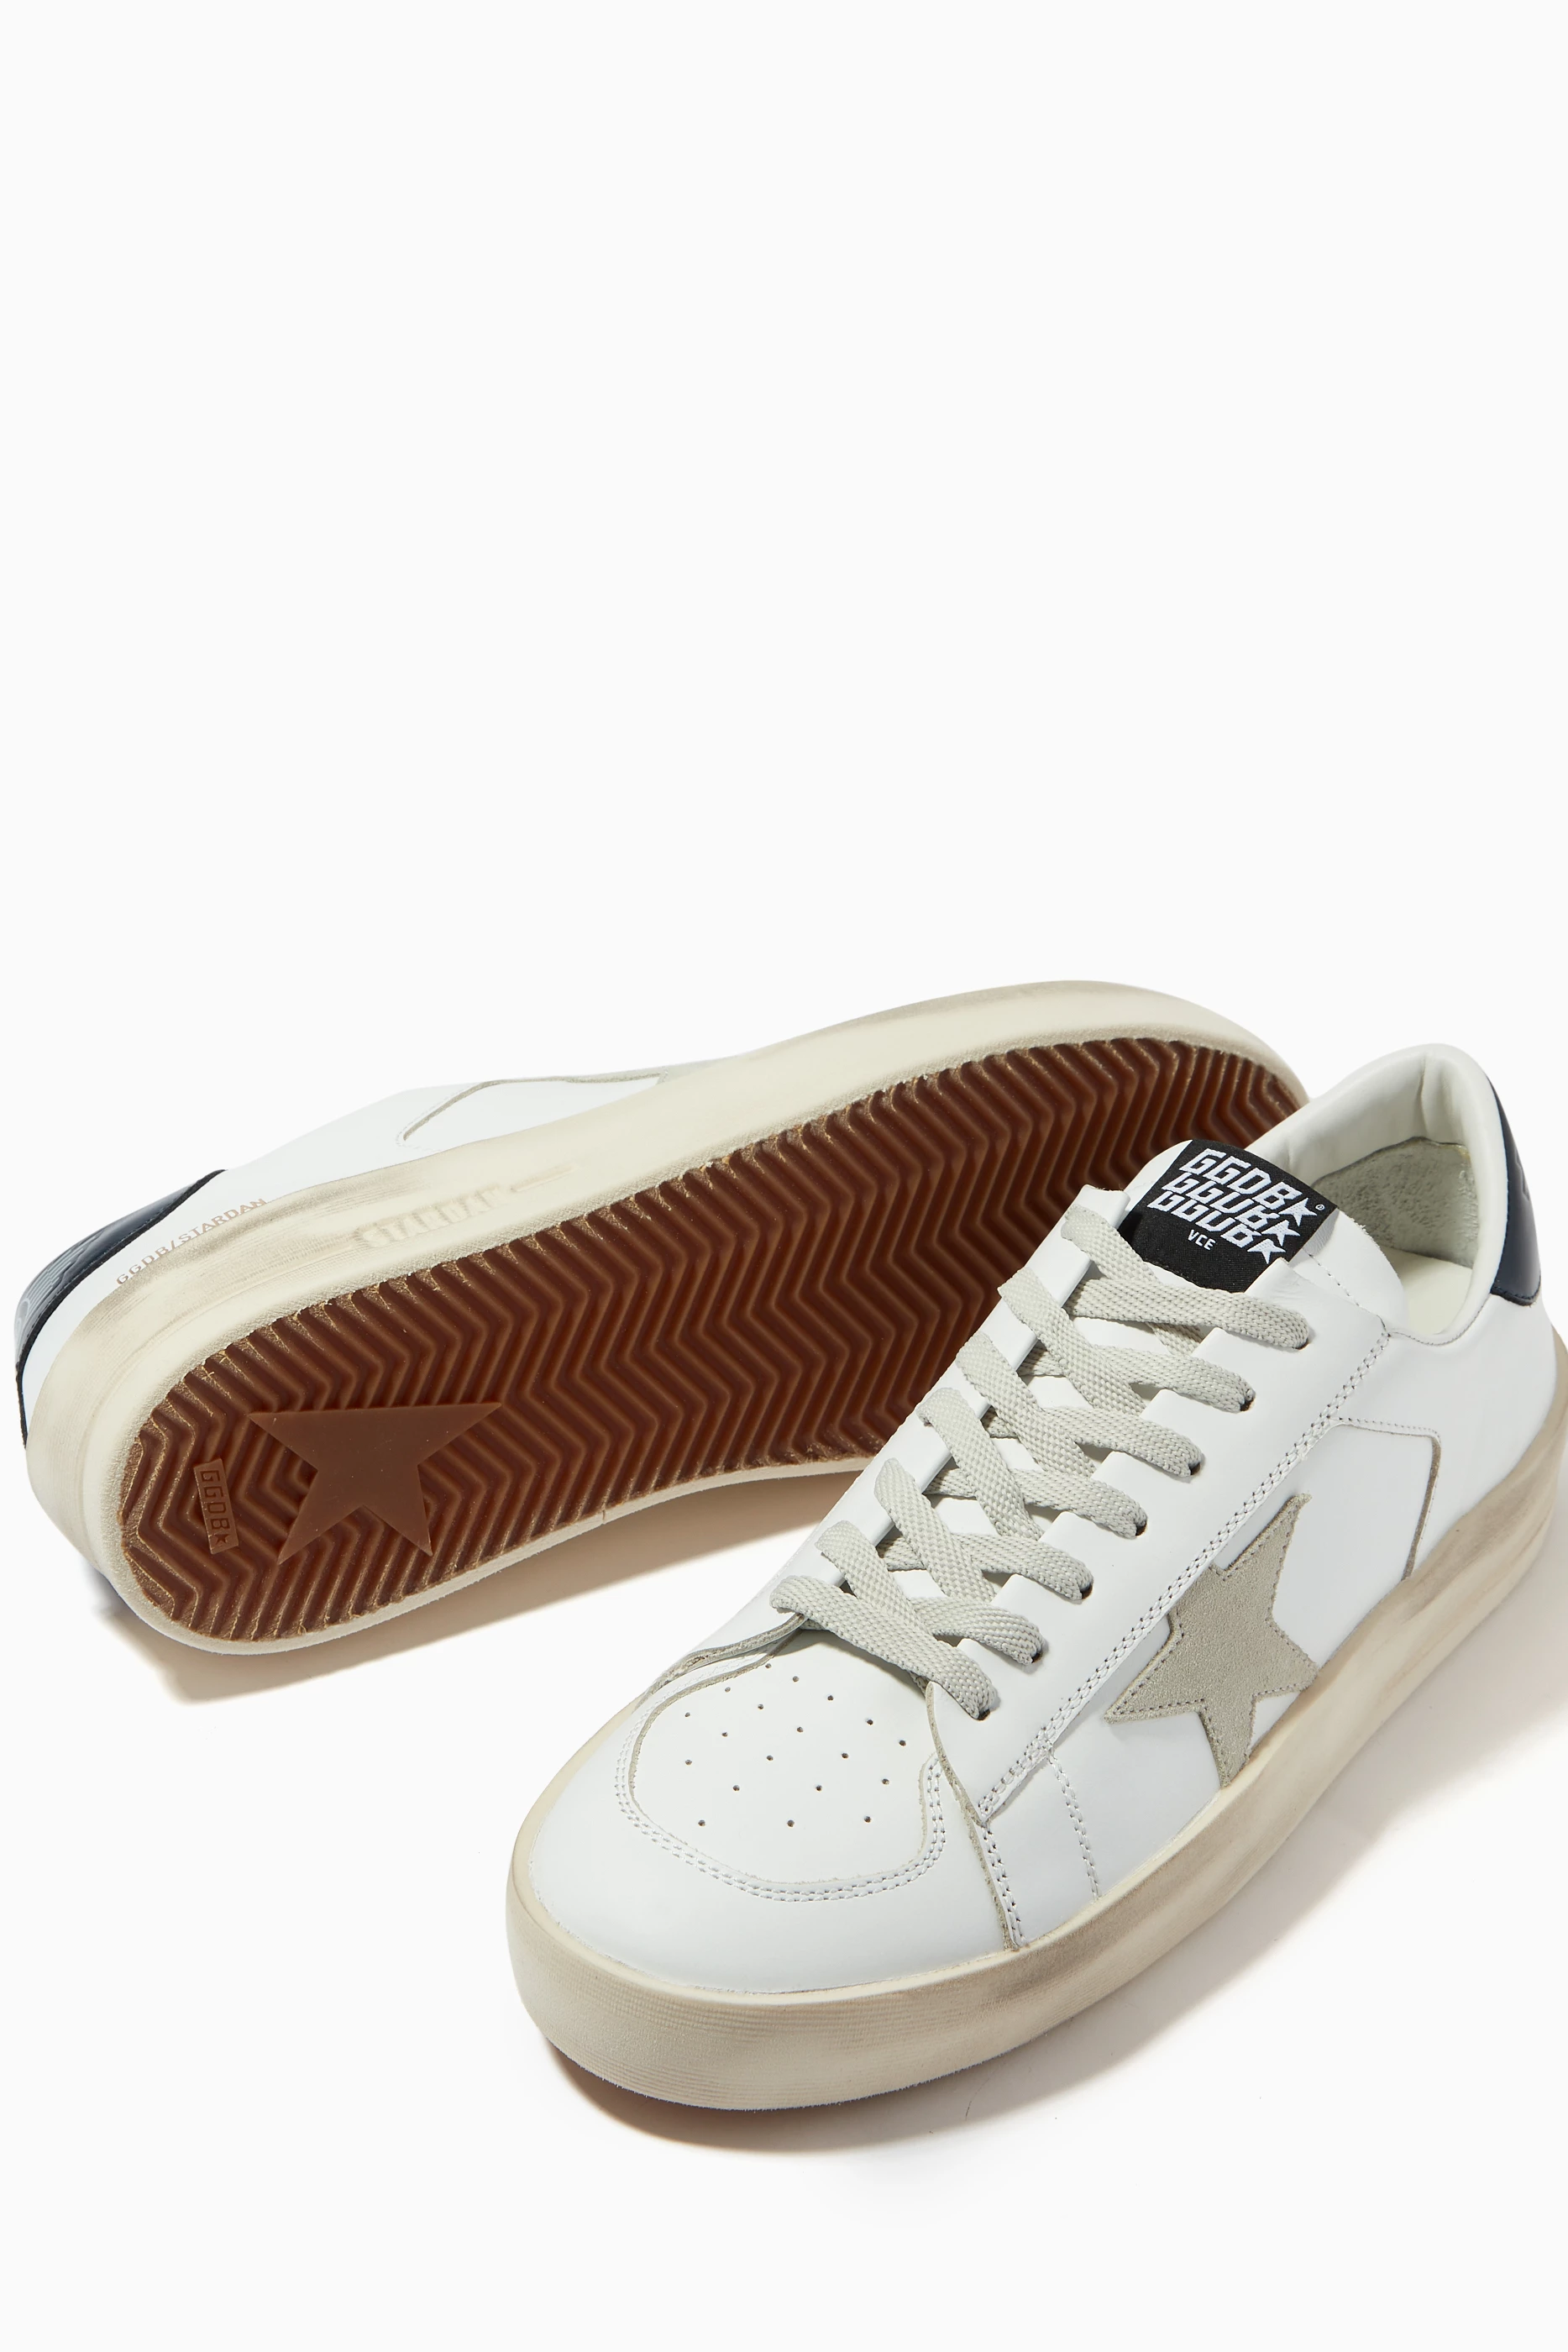 Buy GOLDEN GOOSE White Stardan Sneakers in Leather for Men in Saudi | Ounass